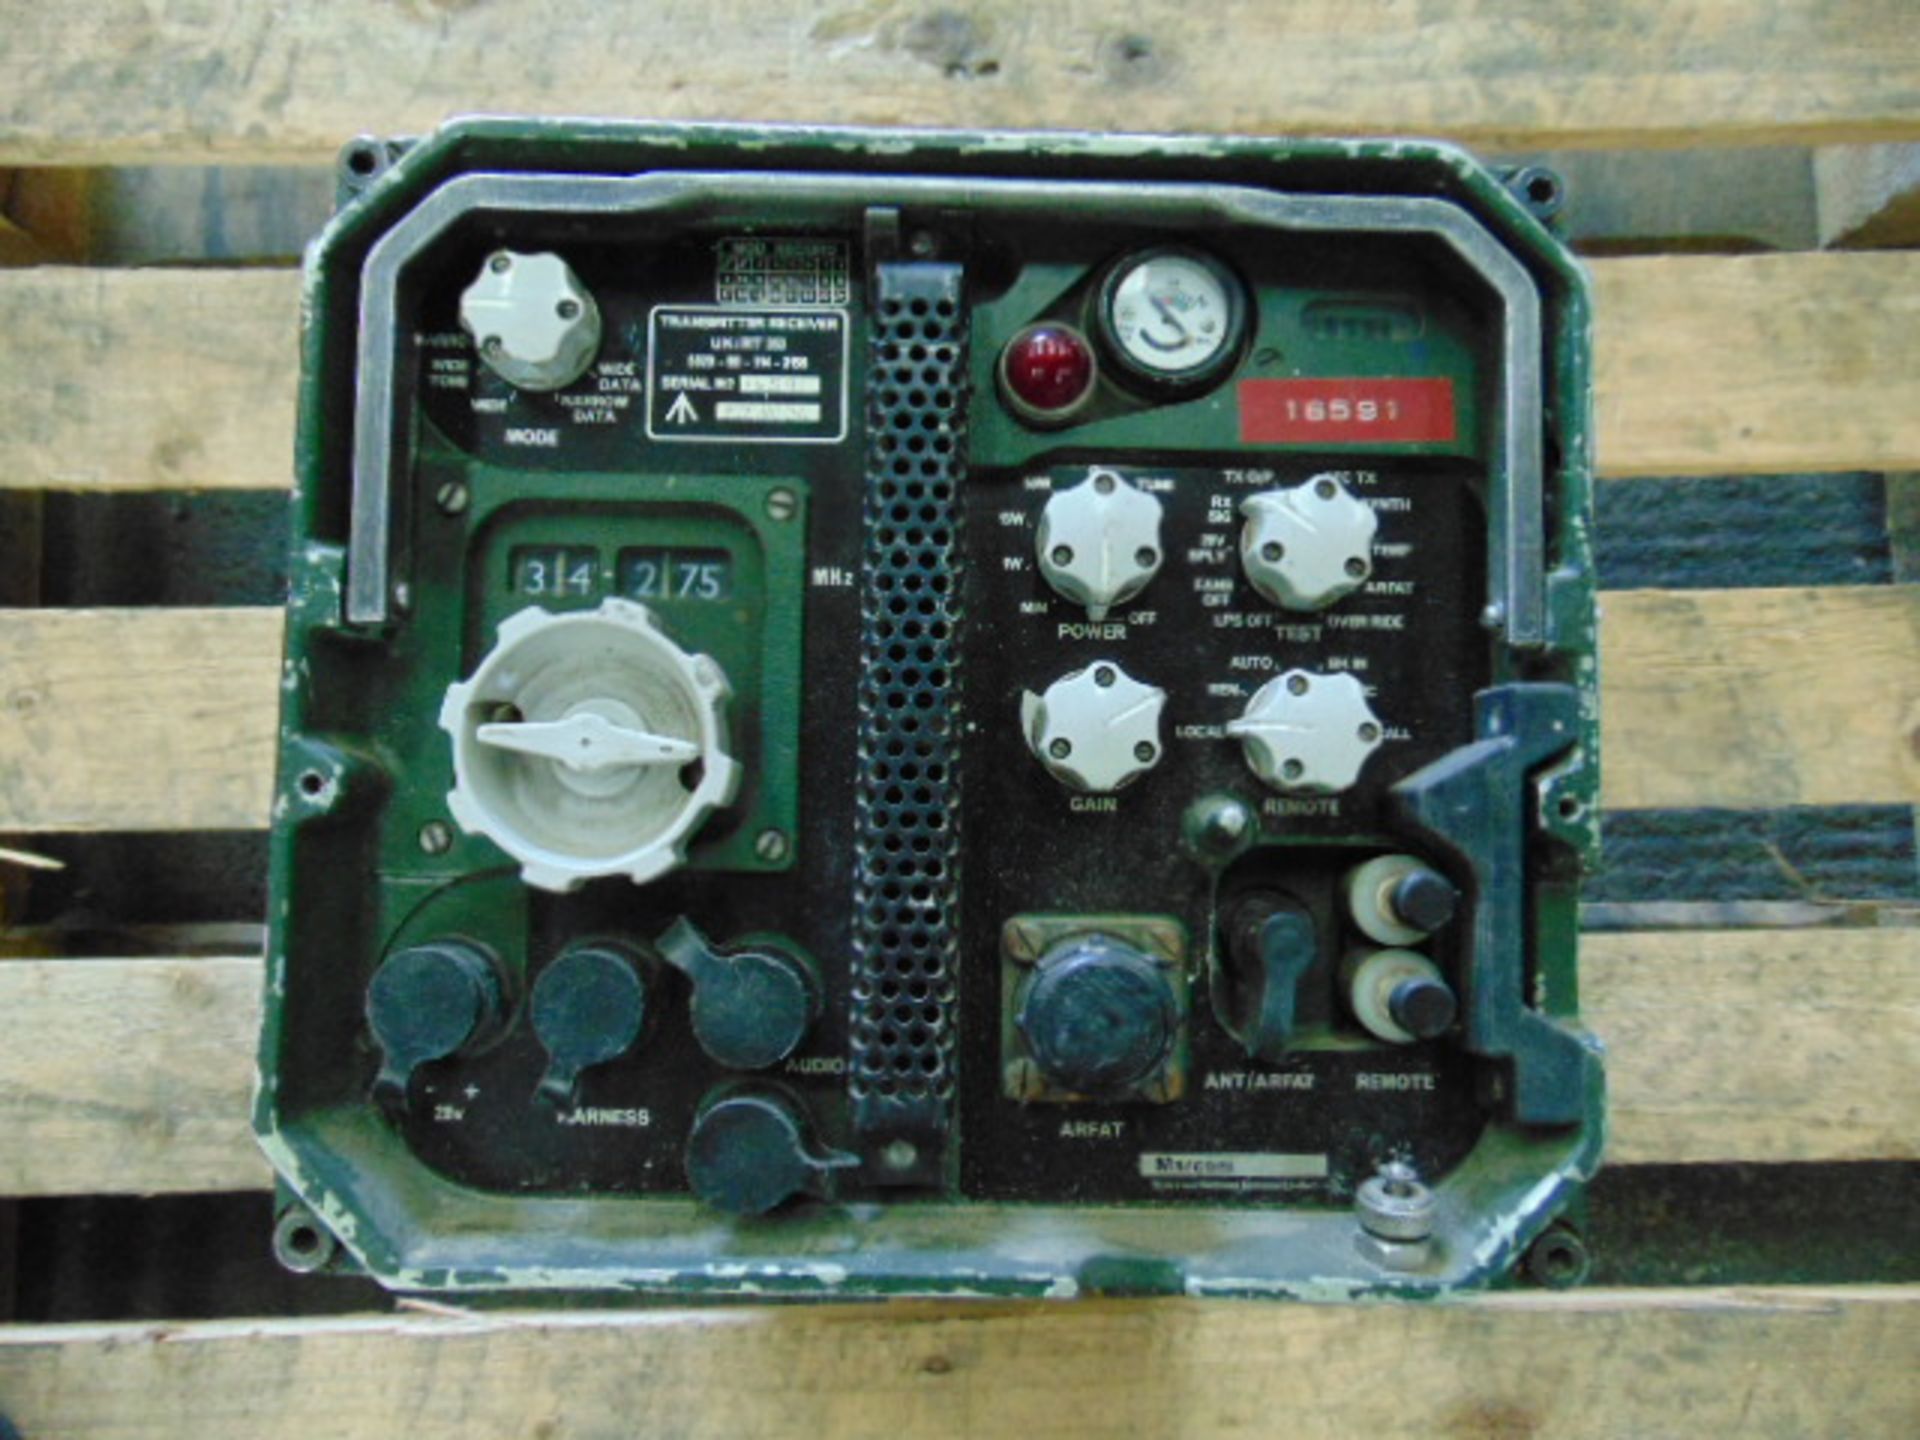 Clansman RT353 Transmitter Receiver